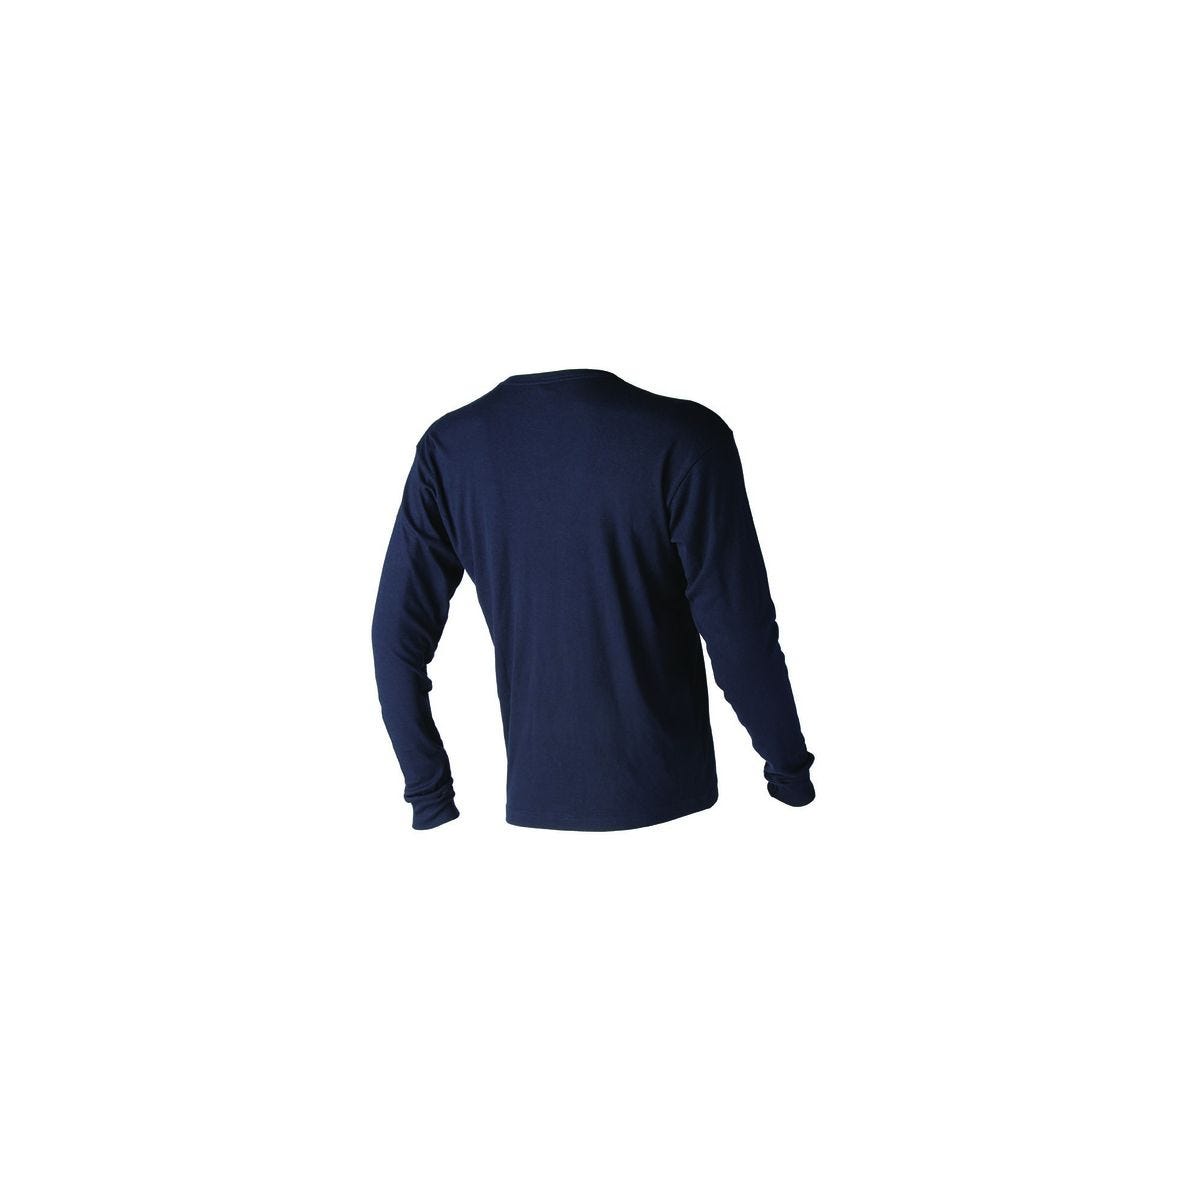 T-shirt SPURR multirisques en 180g/m² - COVERGUARD - Taille S 1